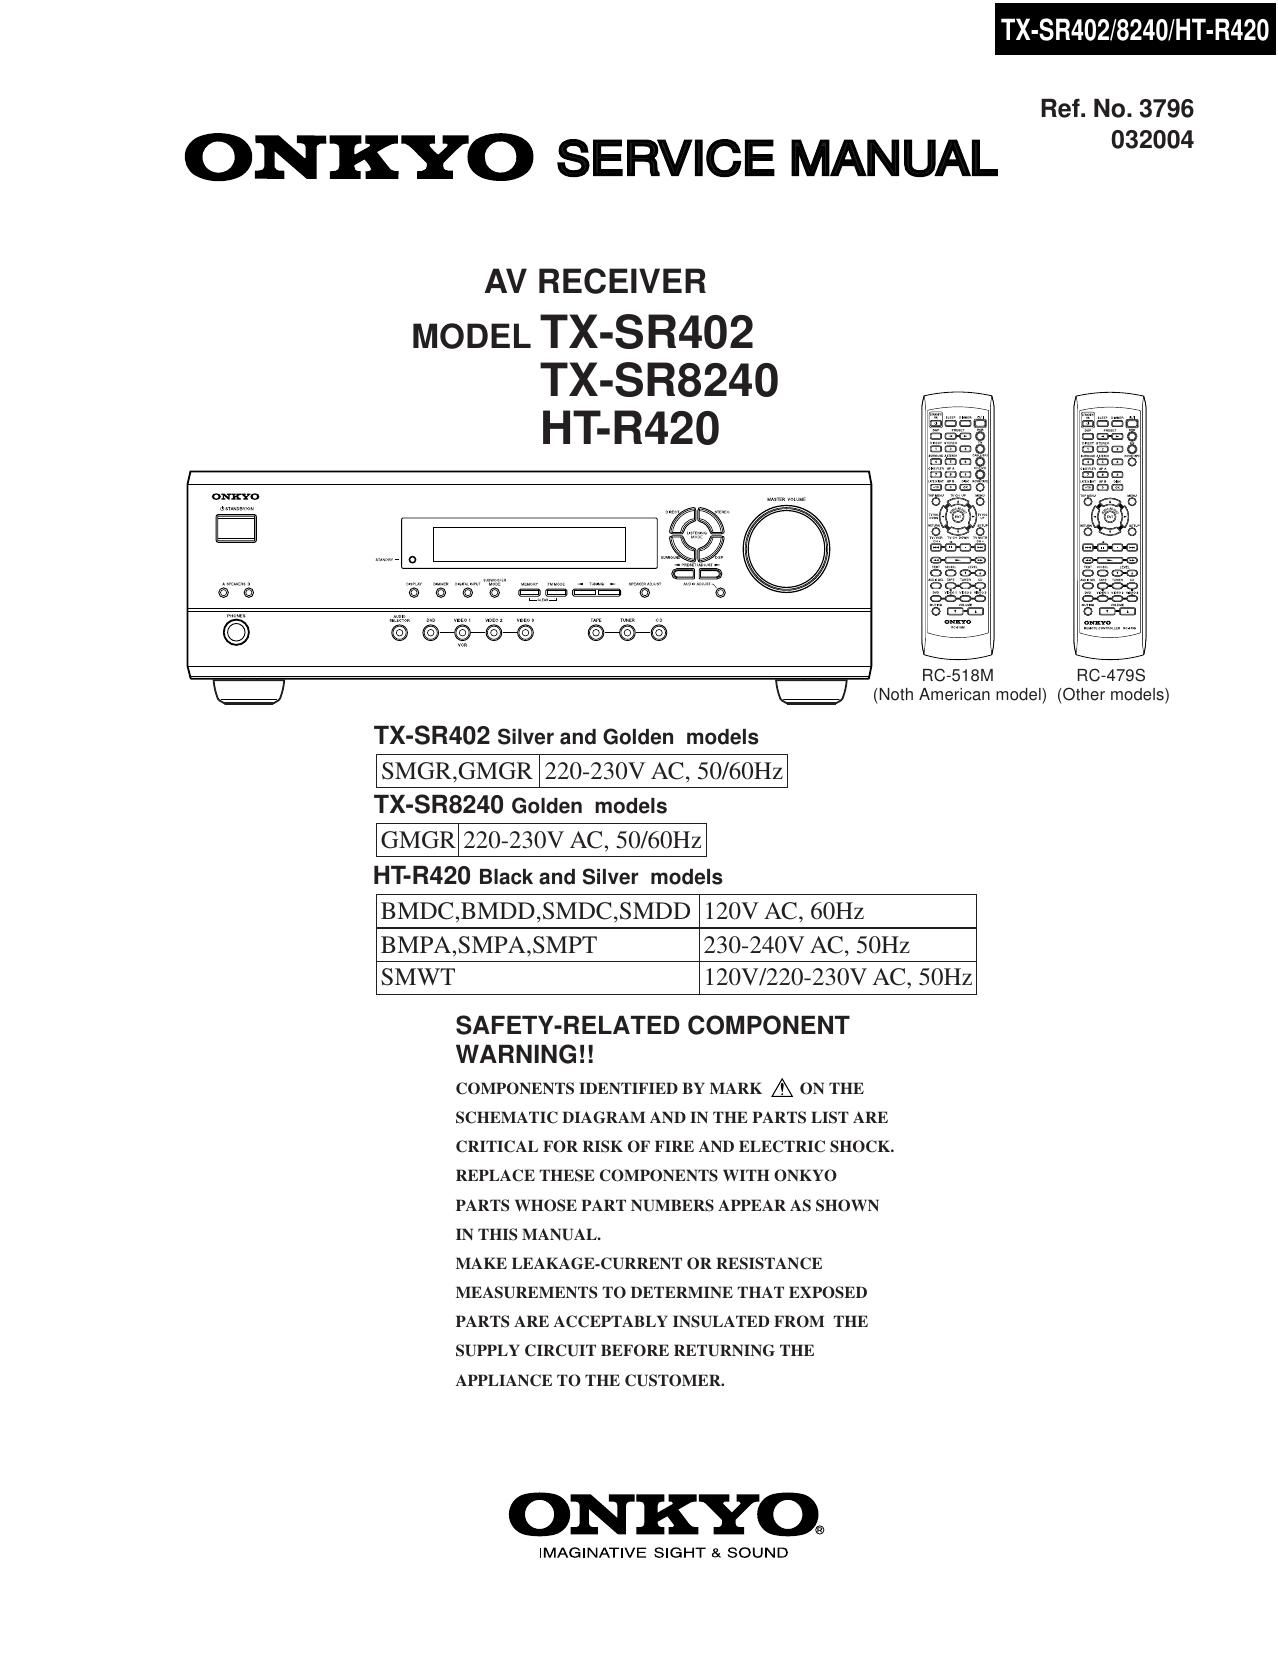 Onkyo TXSR 402 Service Manual